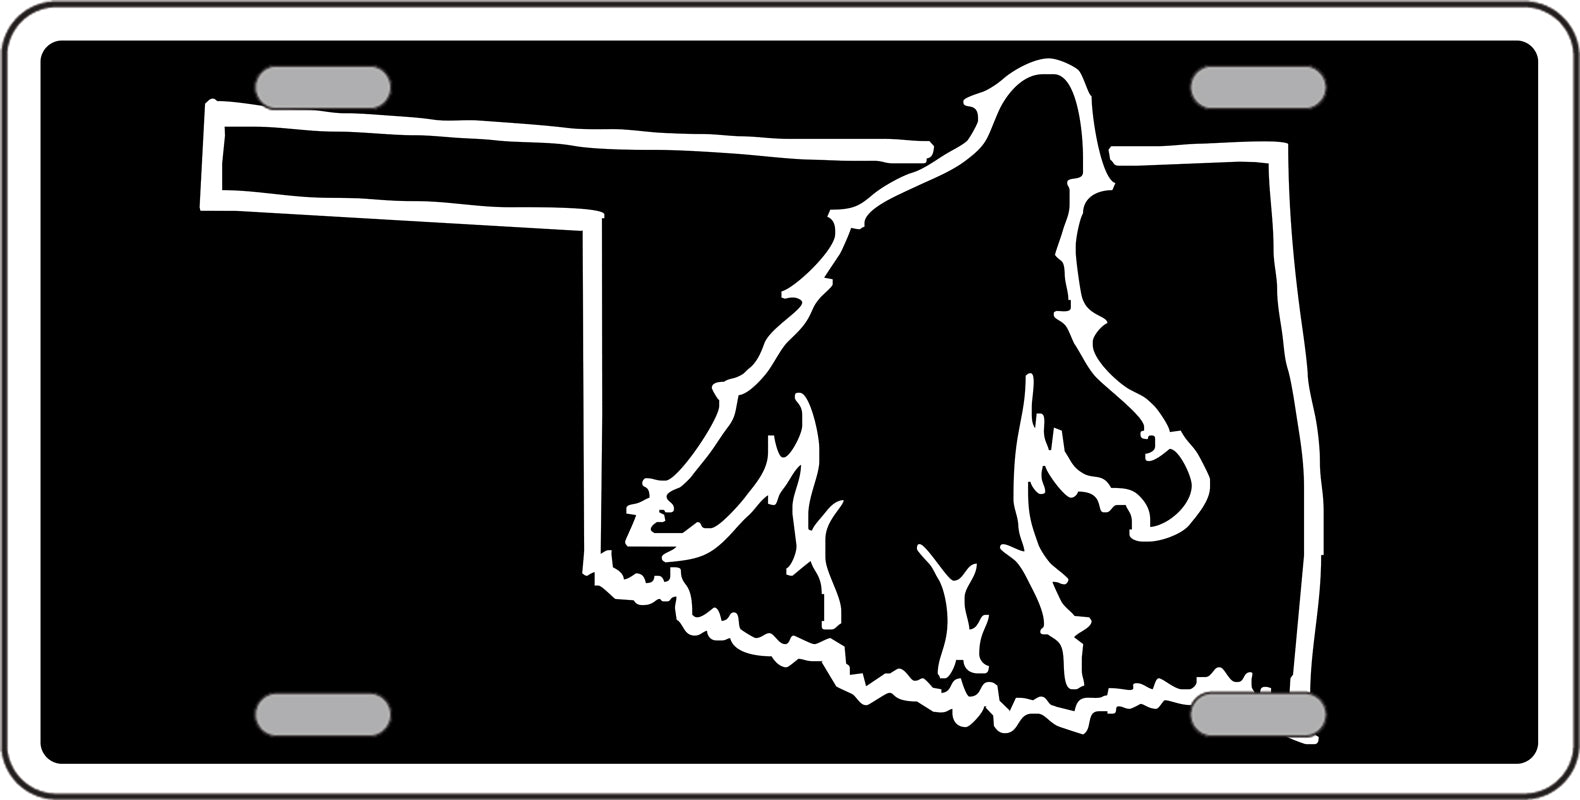 Bigfoot License Tags